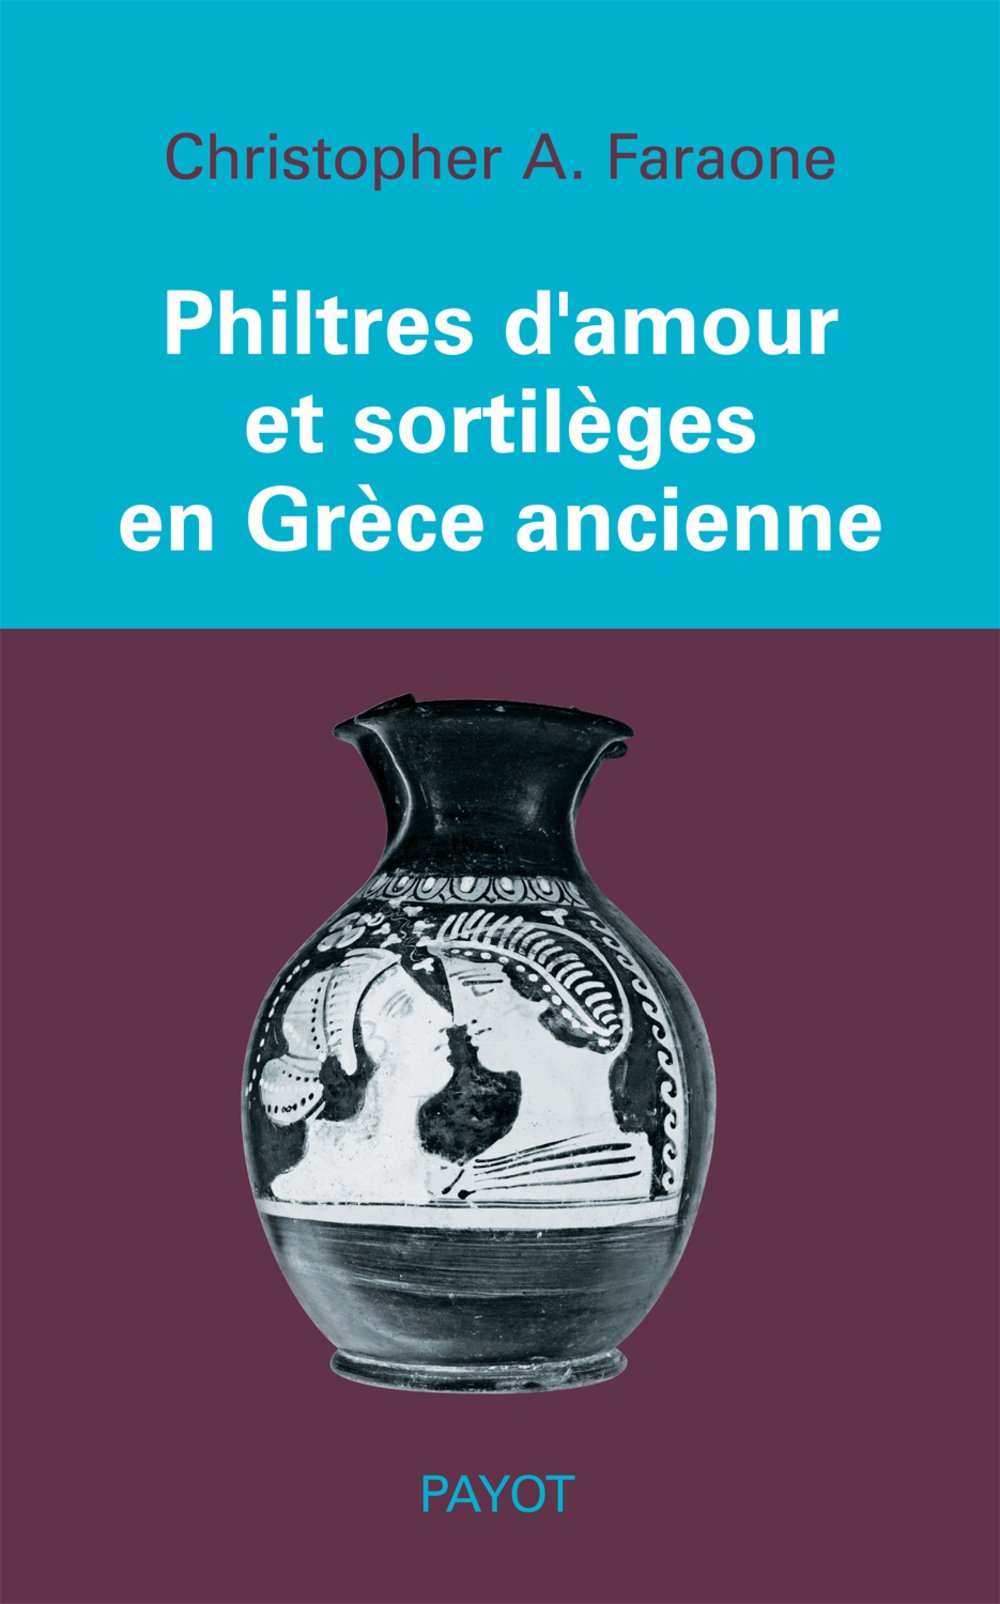 Philtres d'amour et sortilèges en Grèce ancienne, 2006, 288 p.